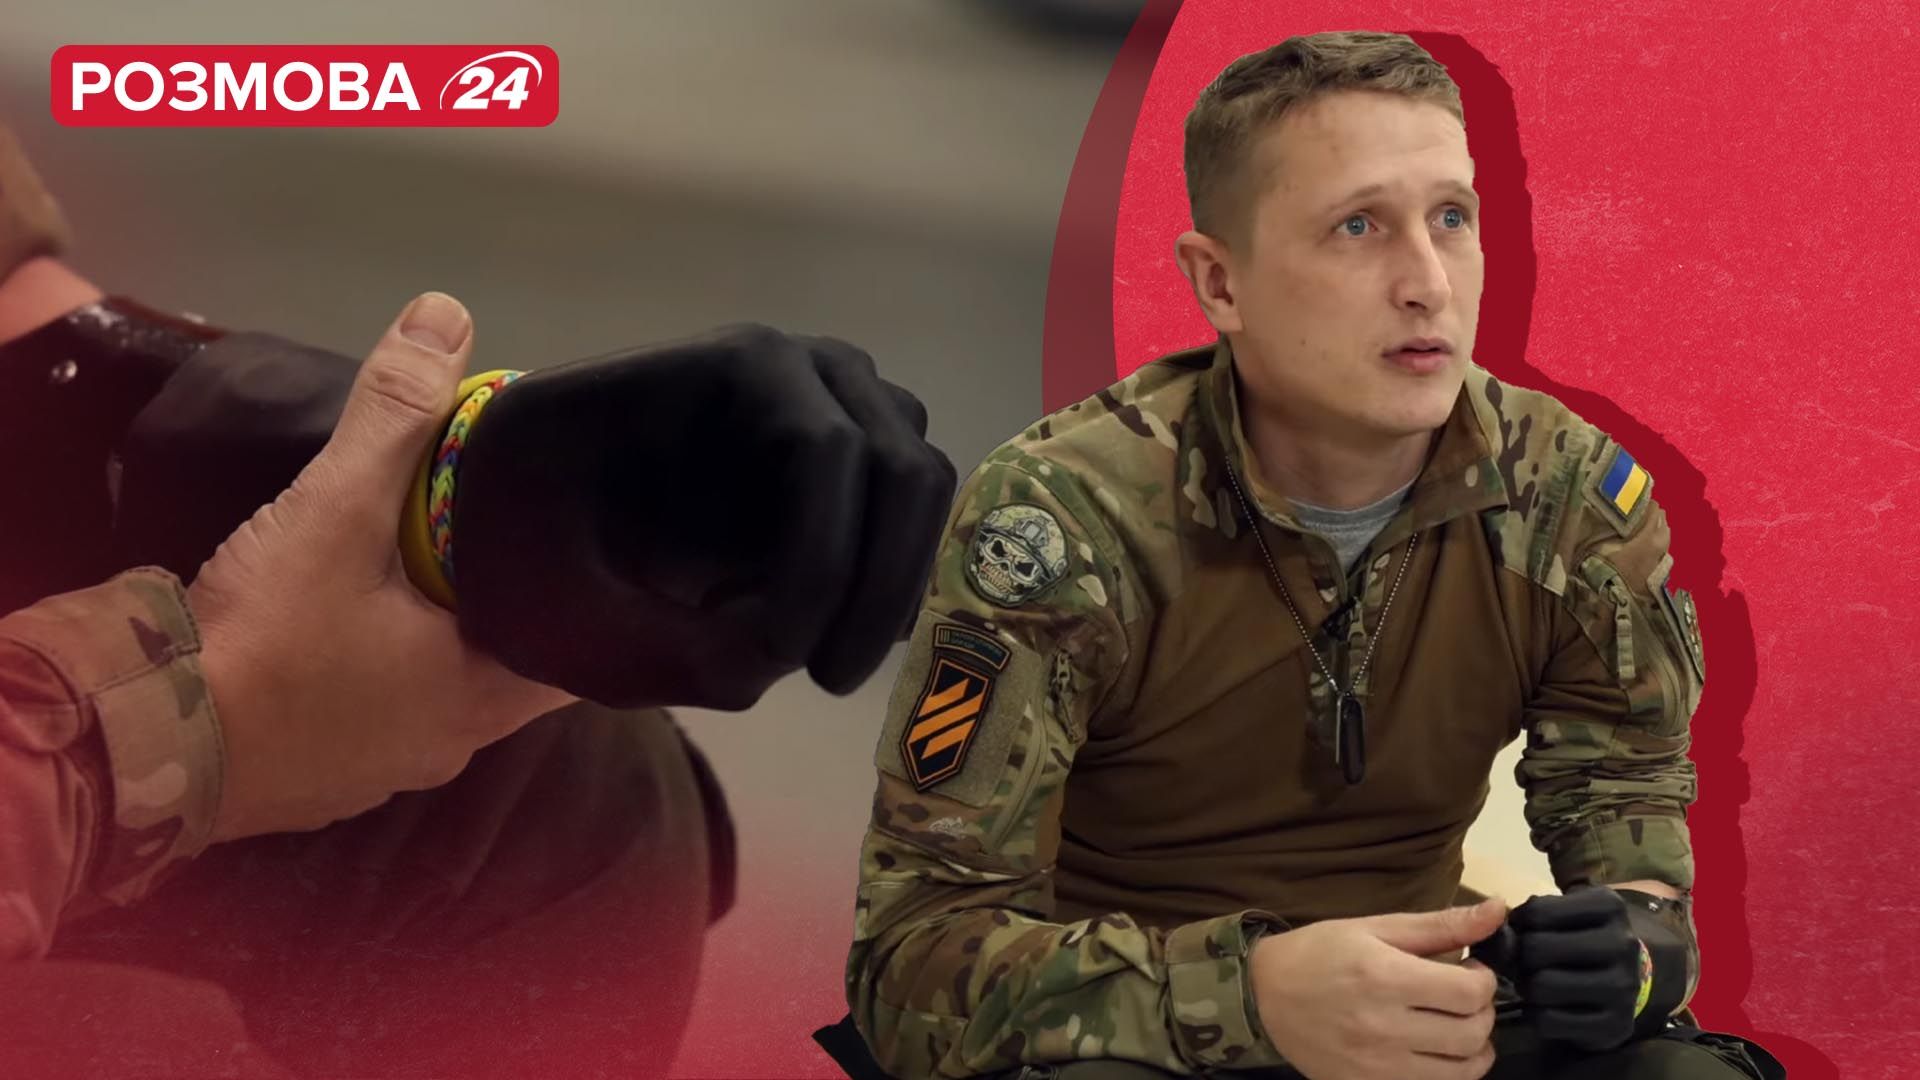 Боєць втратив руку і повертається на фронт - історія захисника - Новини України - 24 Канал